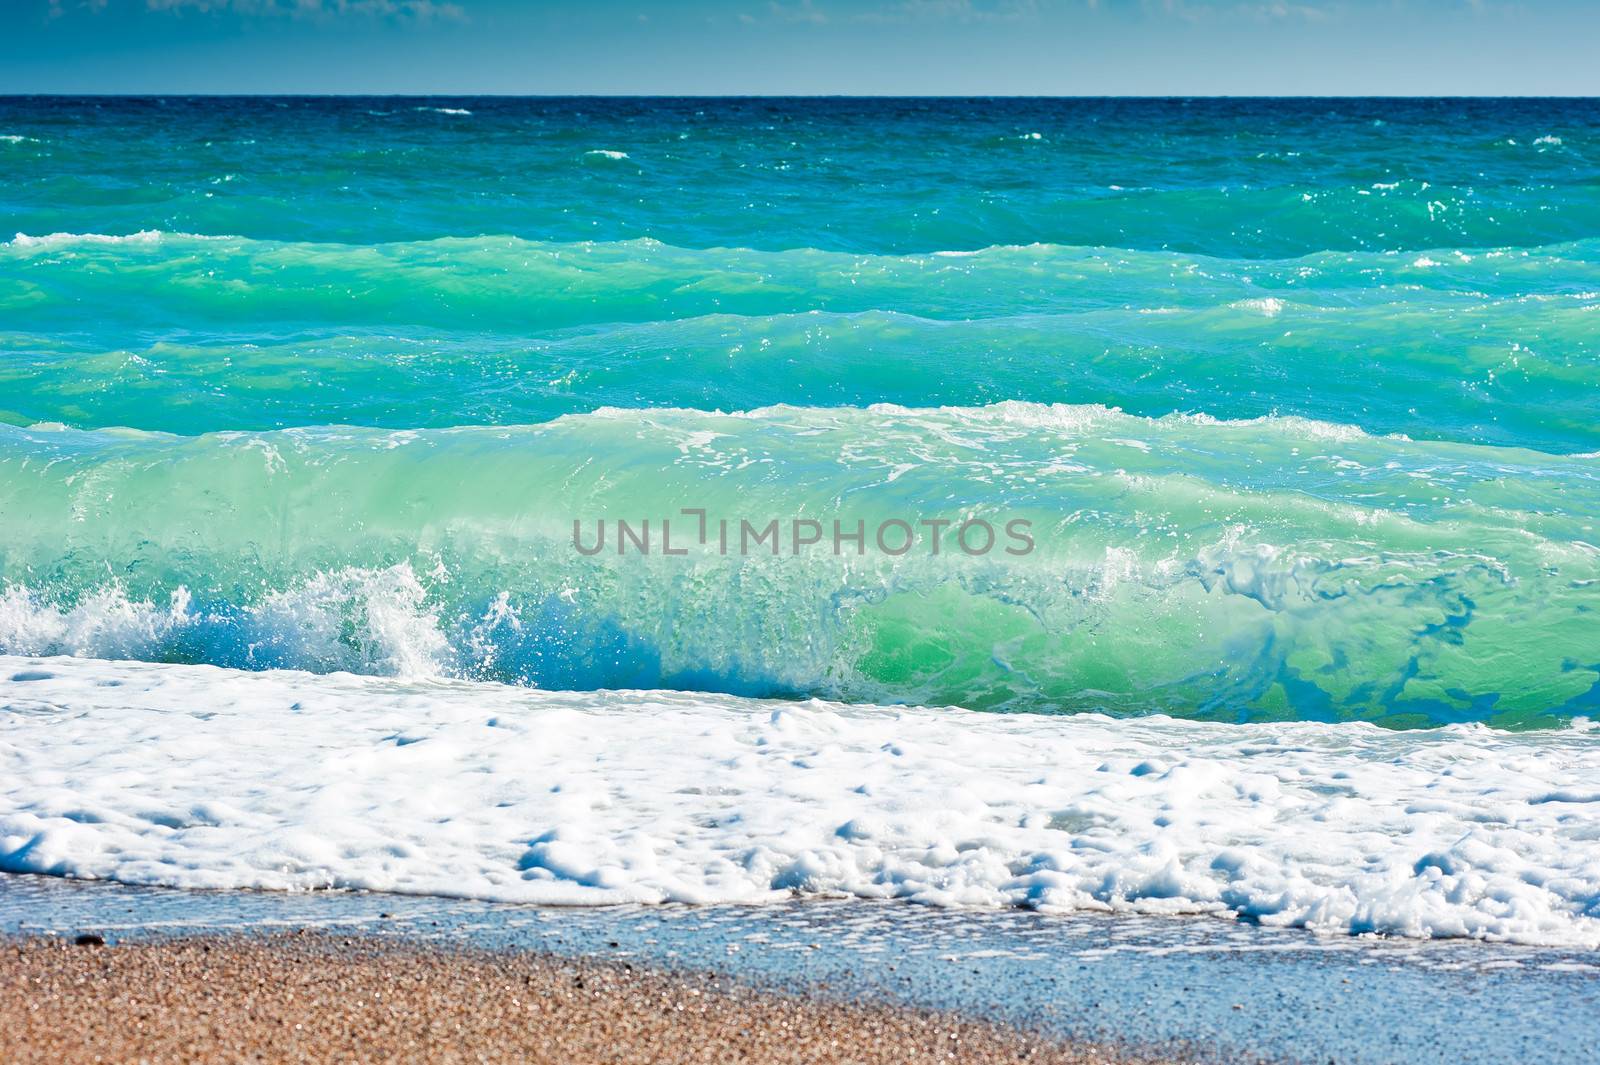 Splash of sea foam on a sandy beach